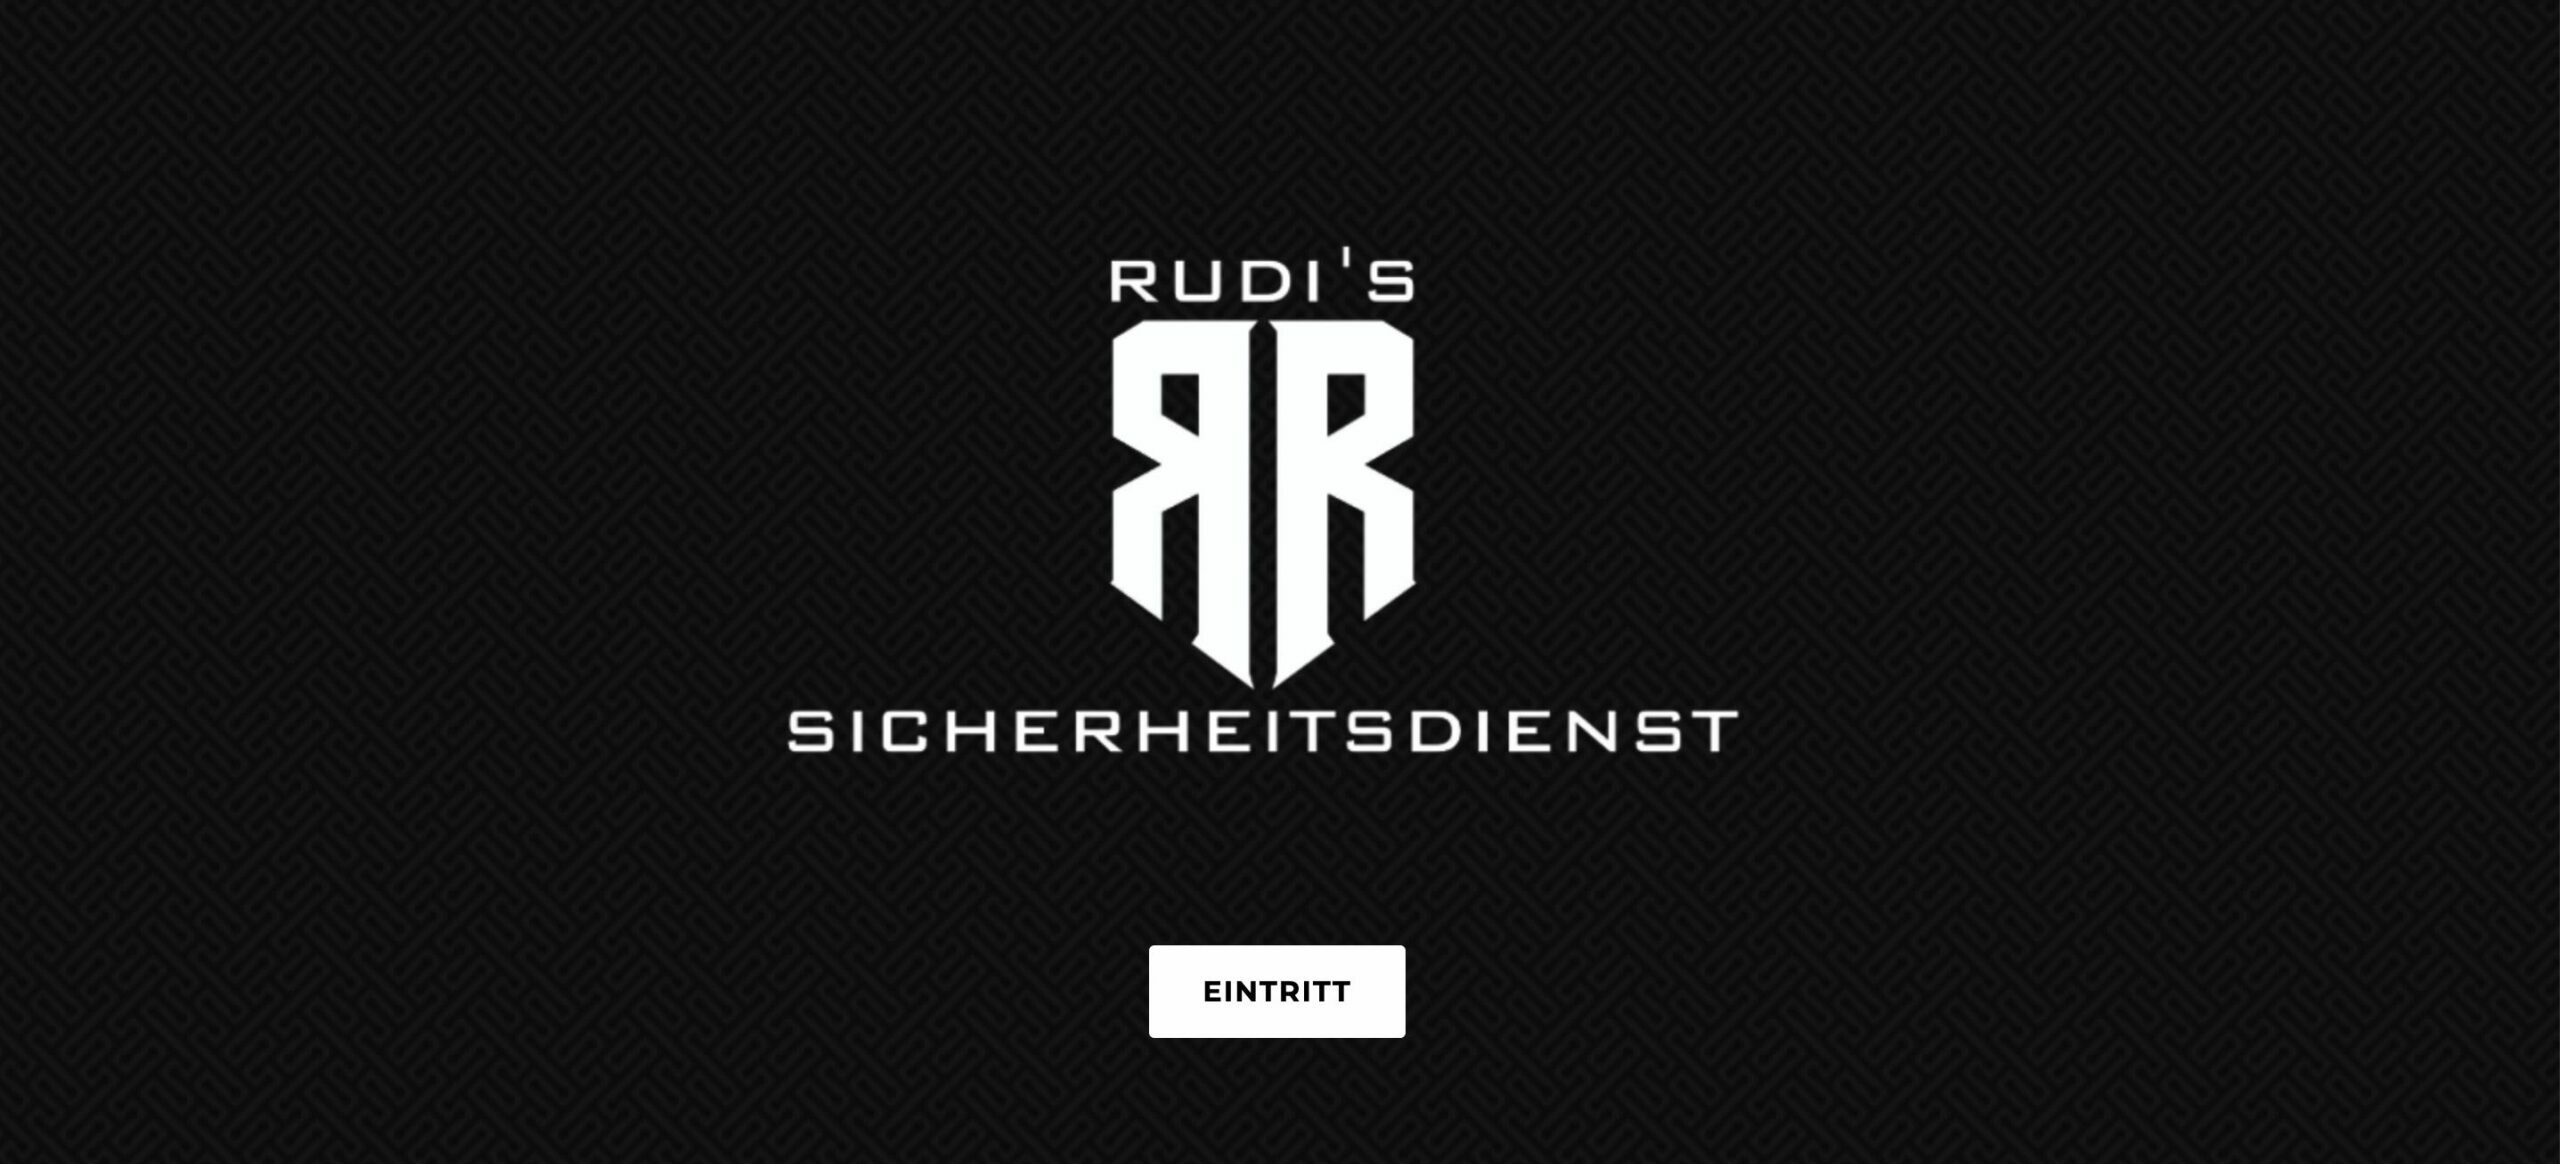 Rudis SIcherheitsdienst